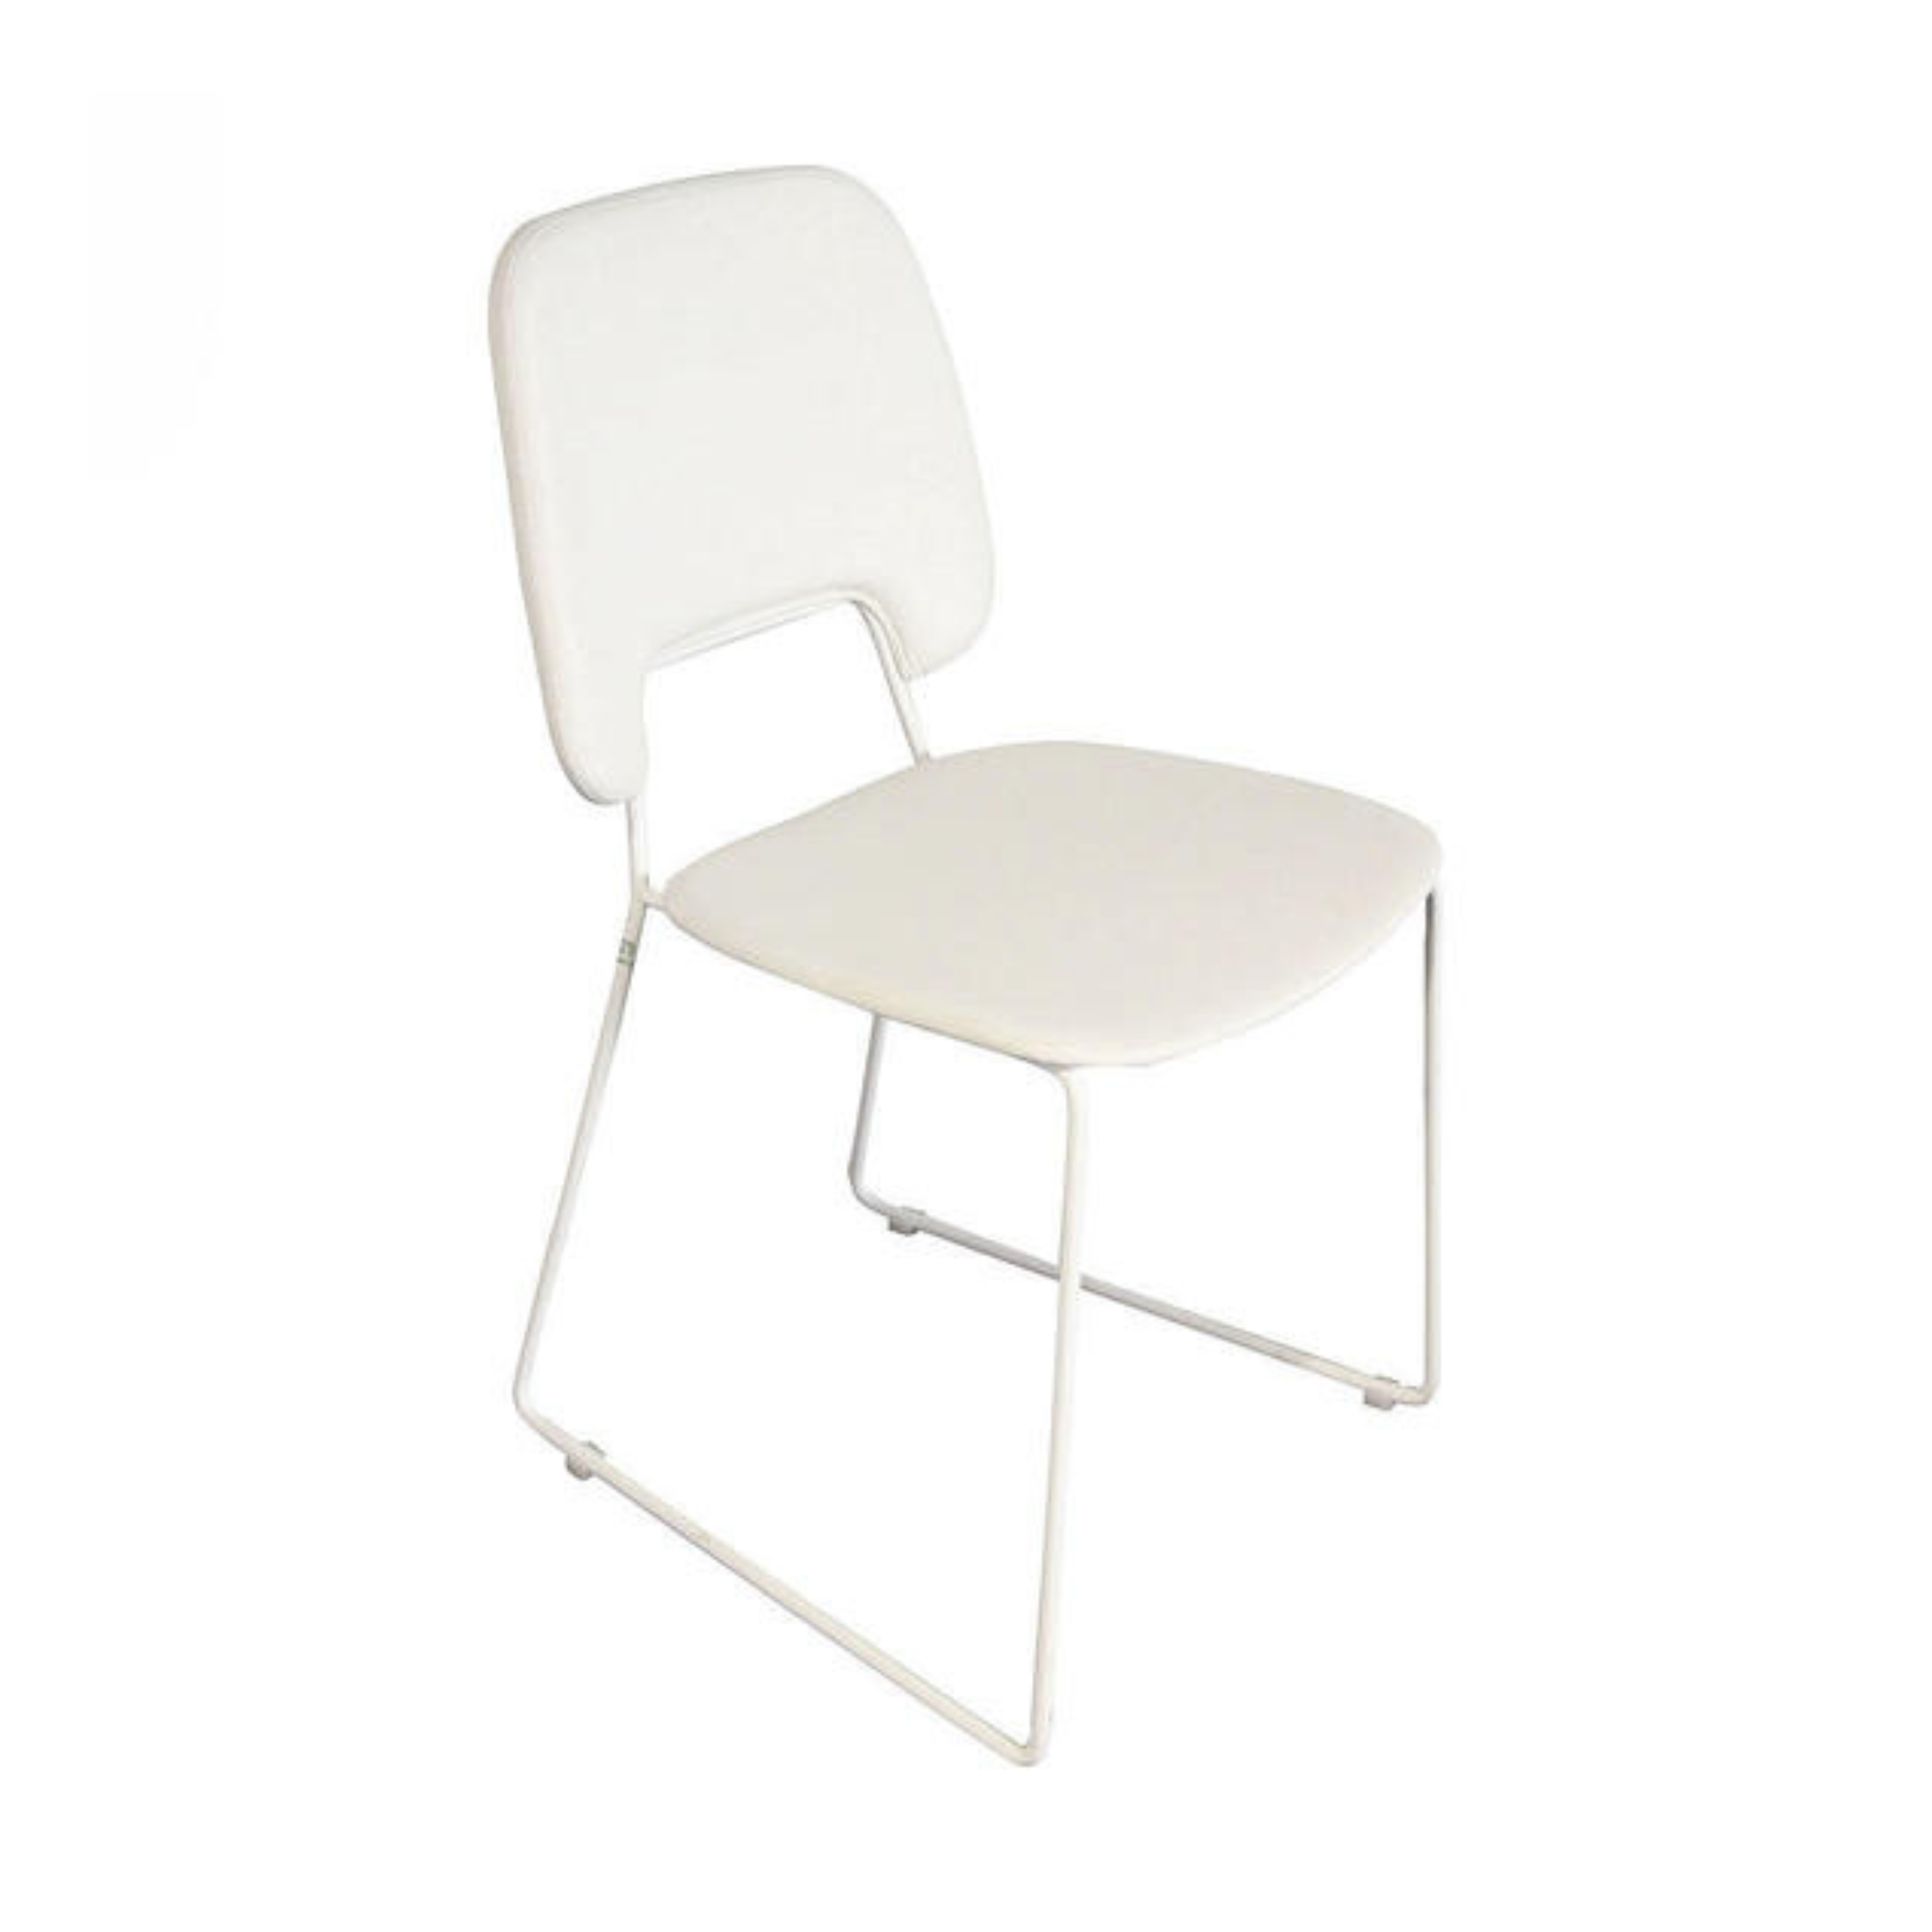 Chaise rembourrée en simili cuir "Guapa" fauteuil moderne 45,5x47,5 cm 89h